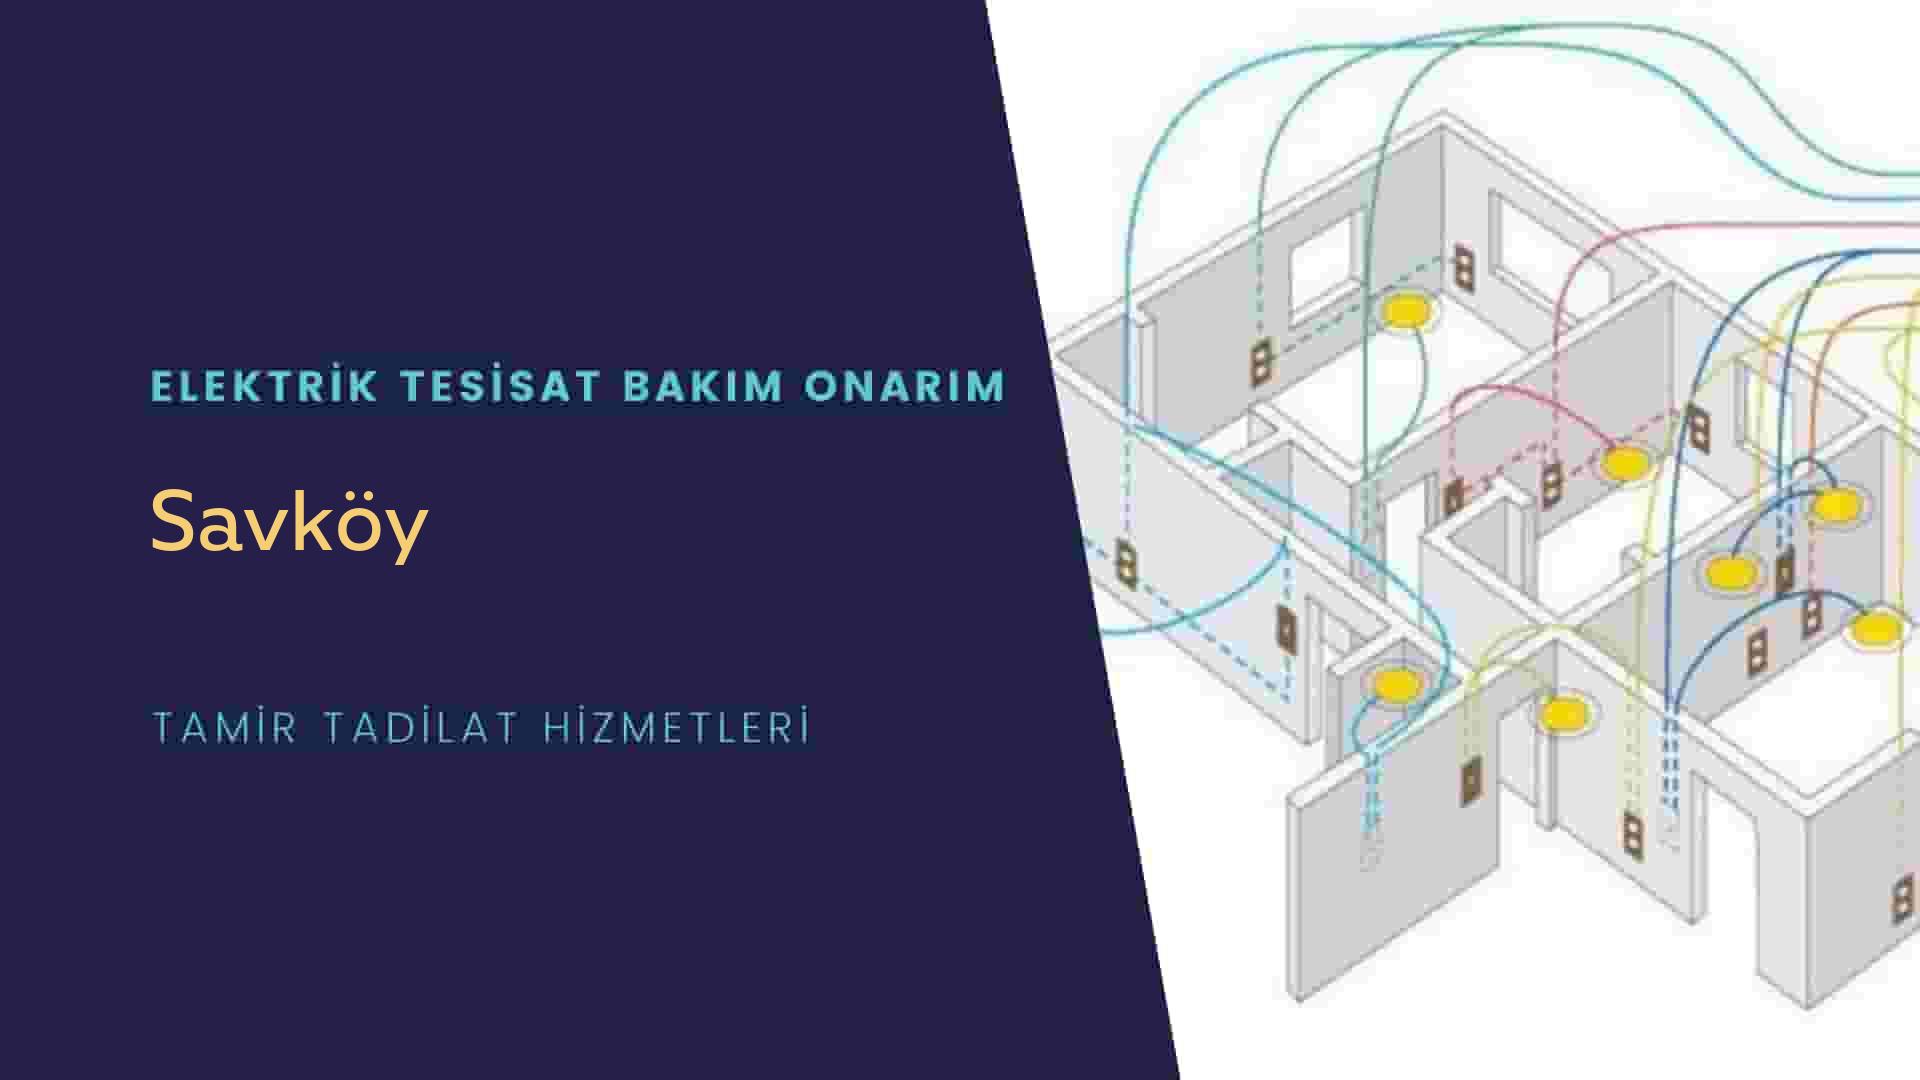 Savköy'de elektrik tesisatı ustalarımı arıyorsunuz doğru adrestenizi Savköy elektrik tesisatı ustalarımız 7/24 sizlere hizmet vermekten mutluluk duyar.